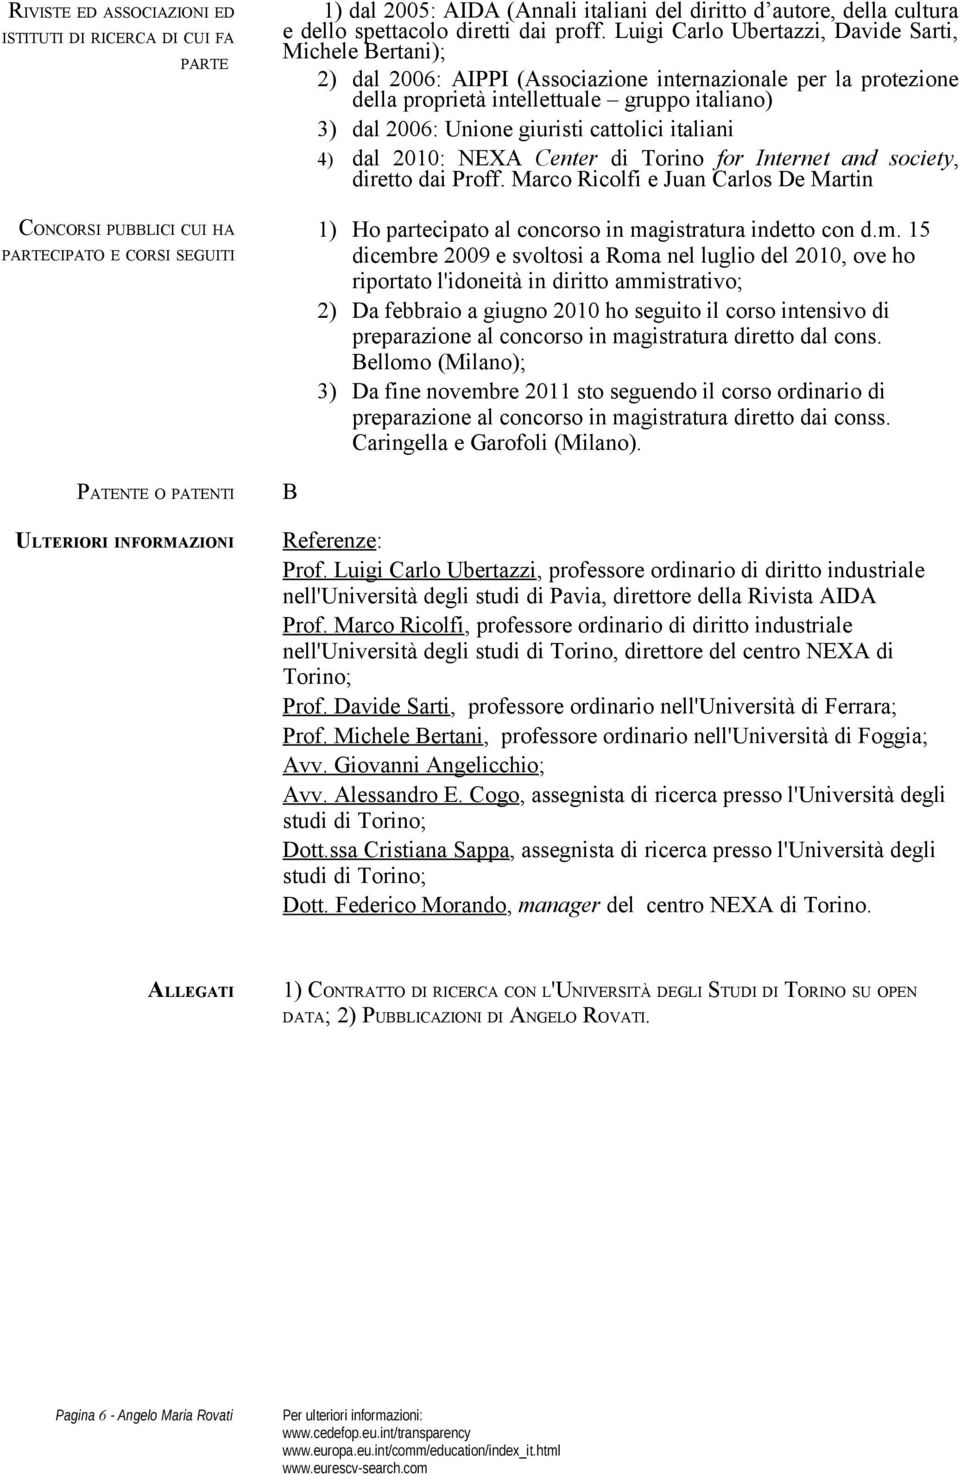 Luigi Carlo Ubertazzi, Davide Sarti, Michele Bertani); 2) dal 2006: AIPPI (Associazione internazionale per la protezione della proprietà intellettuale gruppo italiano) 3) dal 2006: Unione giuristi